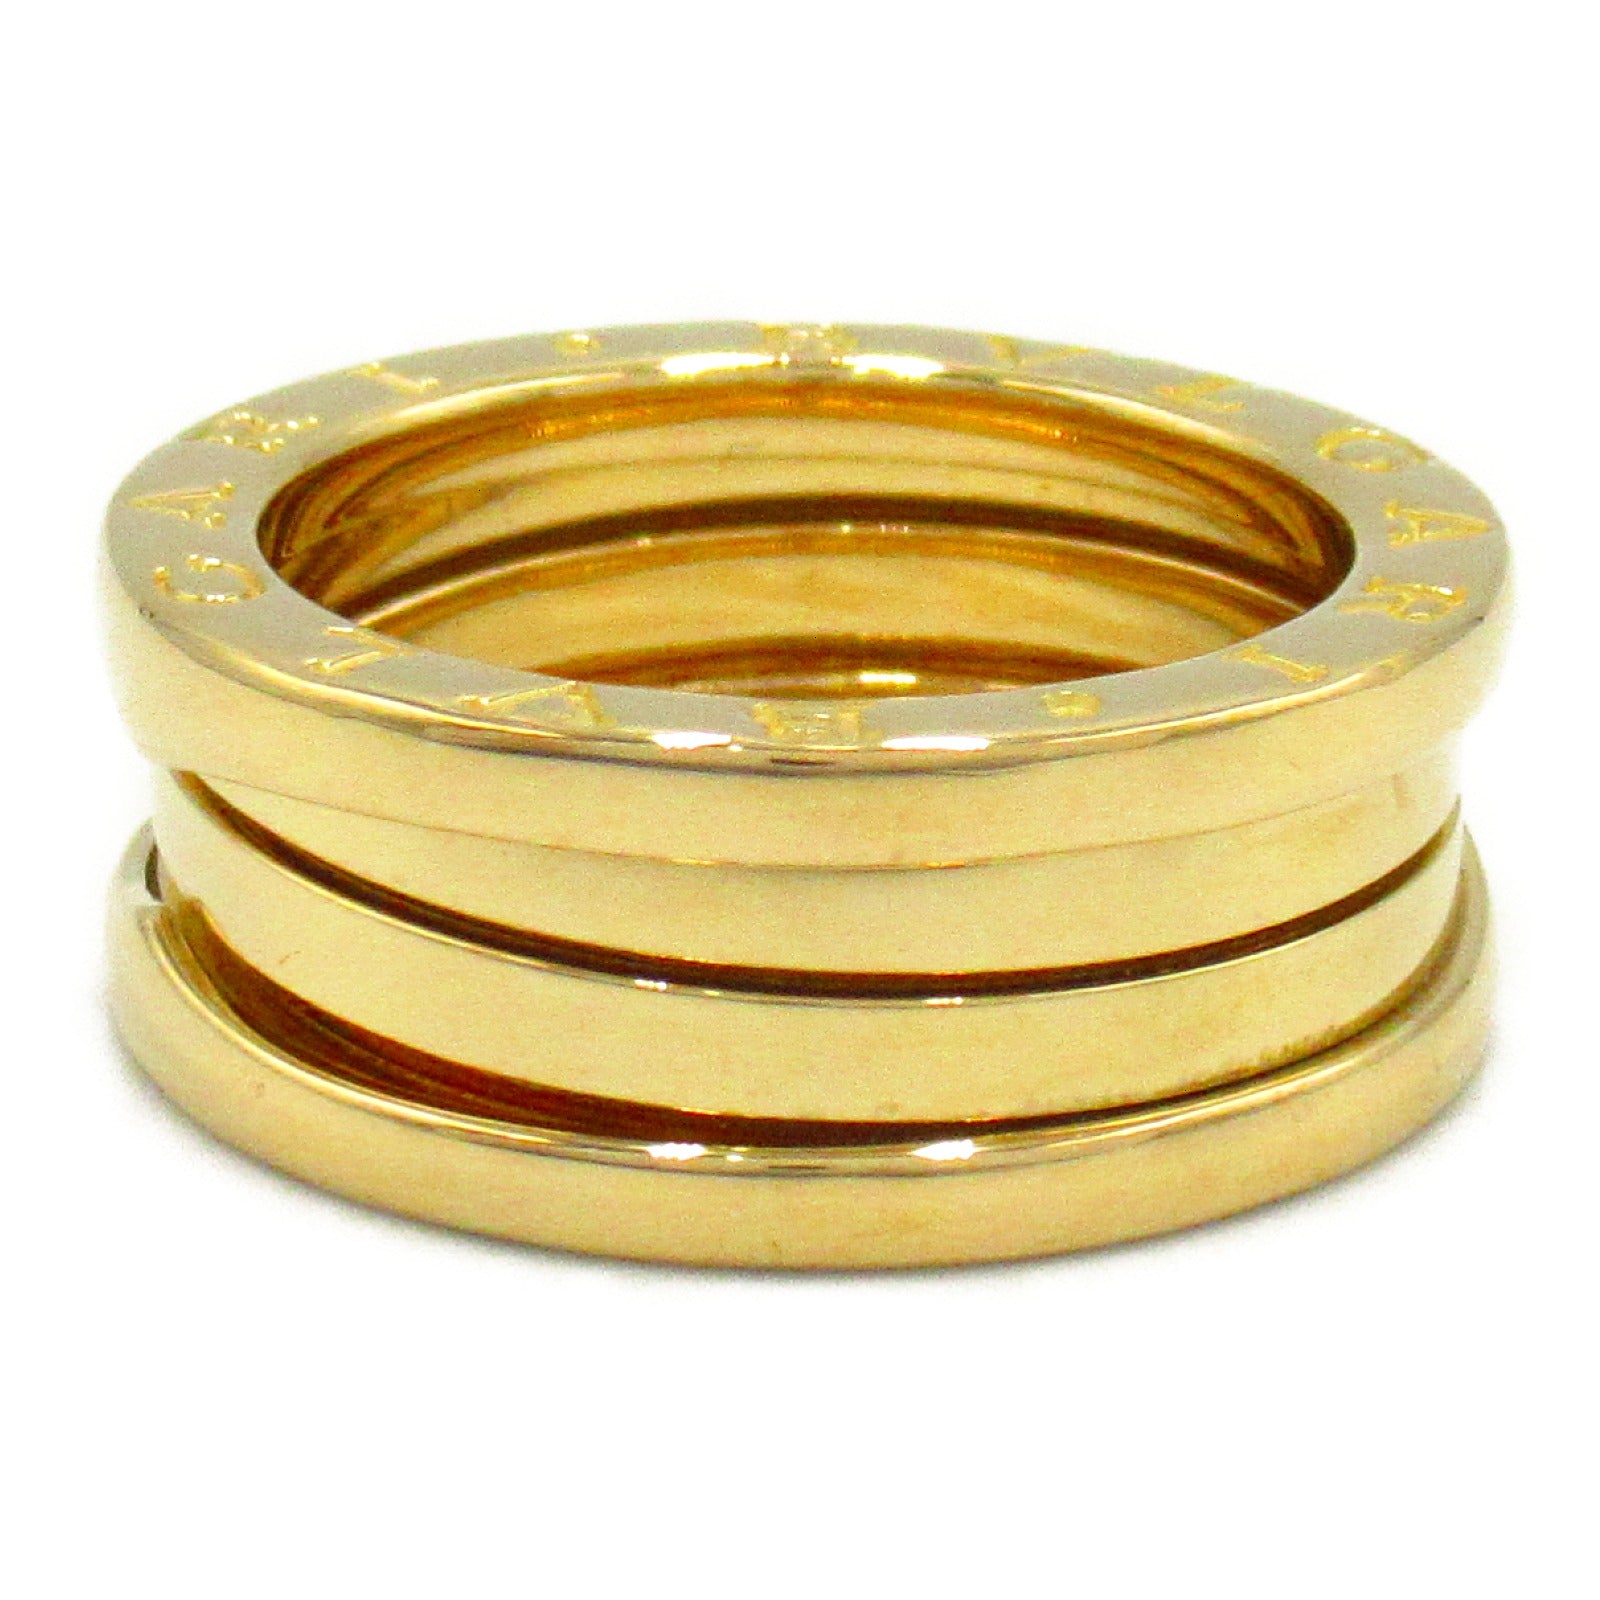 Bulgari BVLGARI B-zero1 Beezero One 3 Band Ring Ring Ring Ring Jewelry K18 (Yellow G)   G